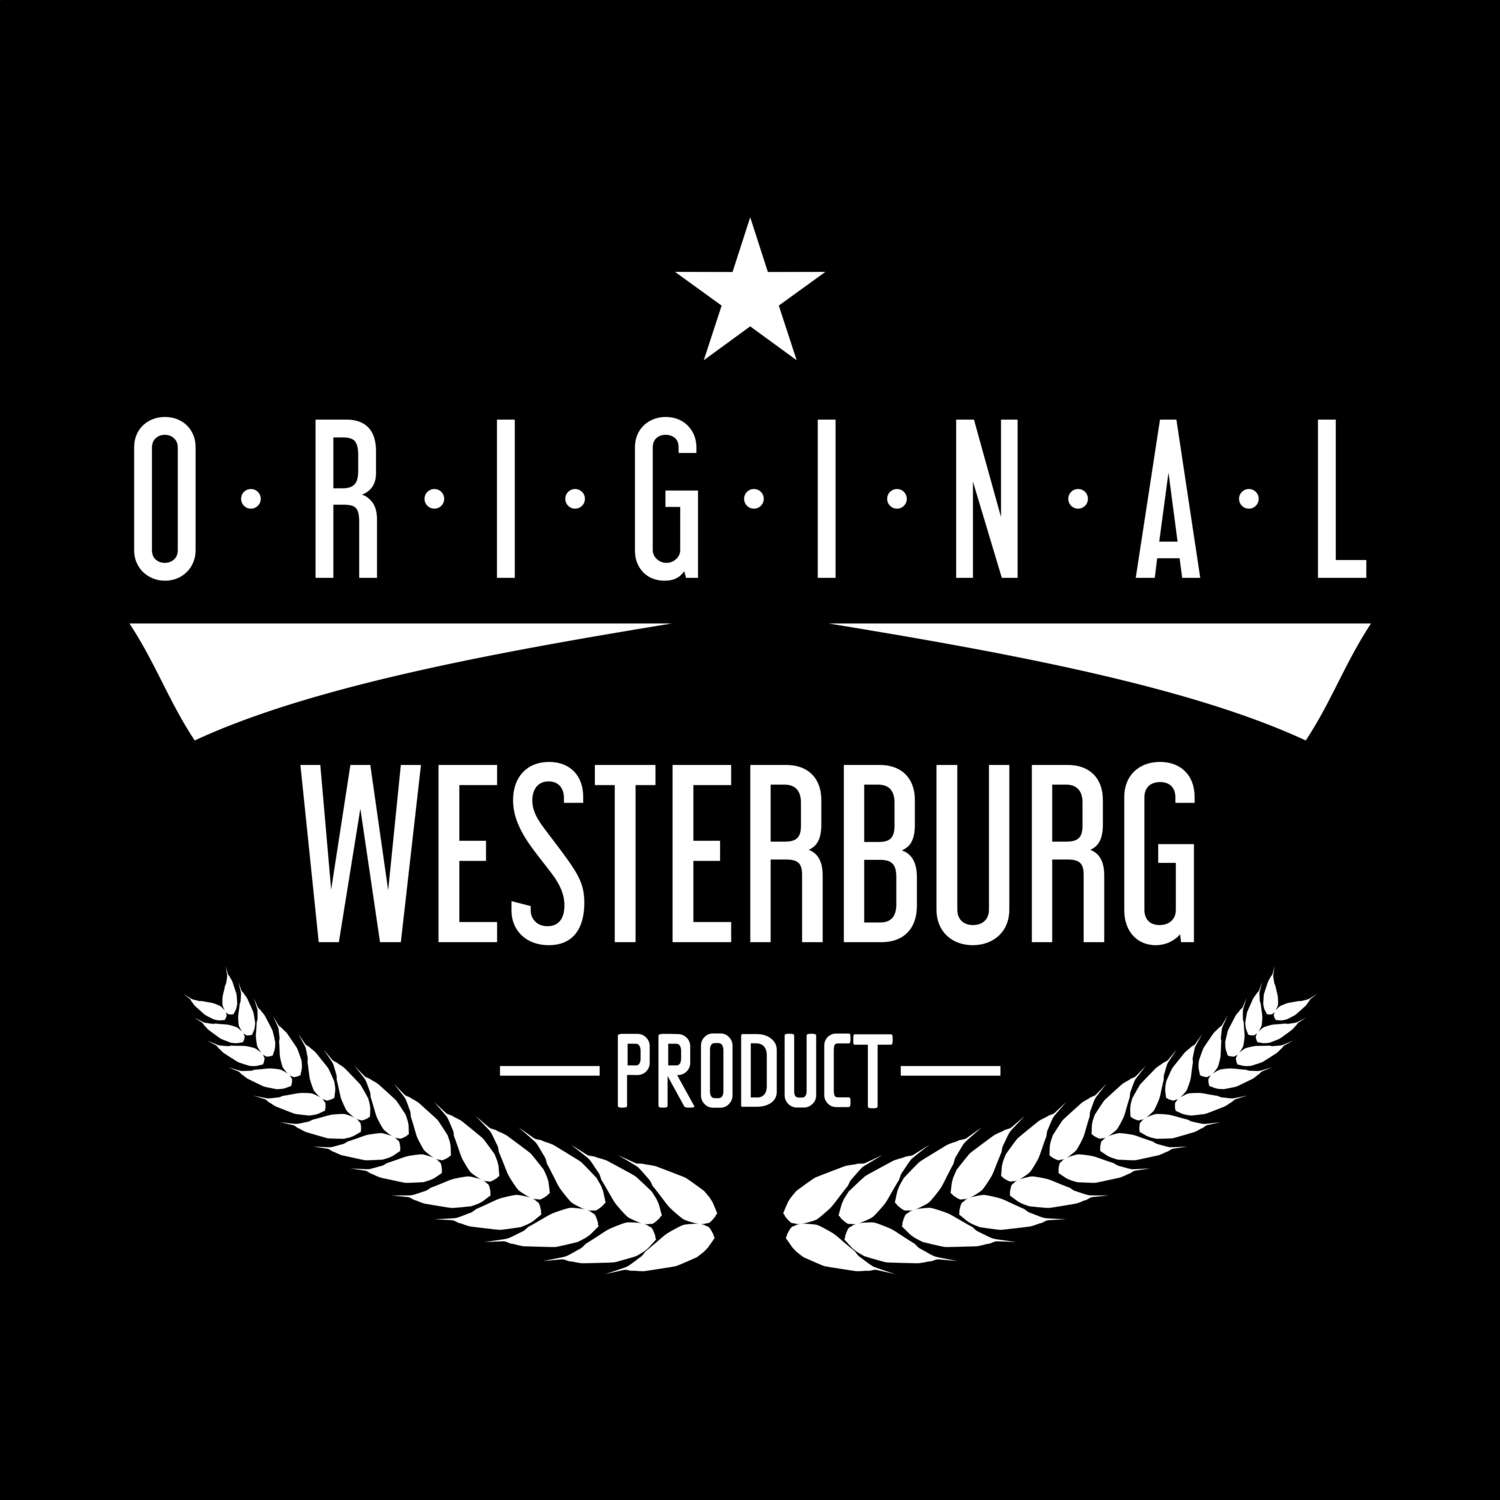 Westerburg T-Shirt »Original Product«